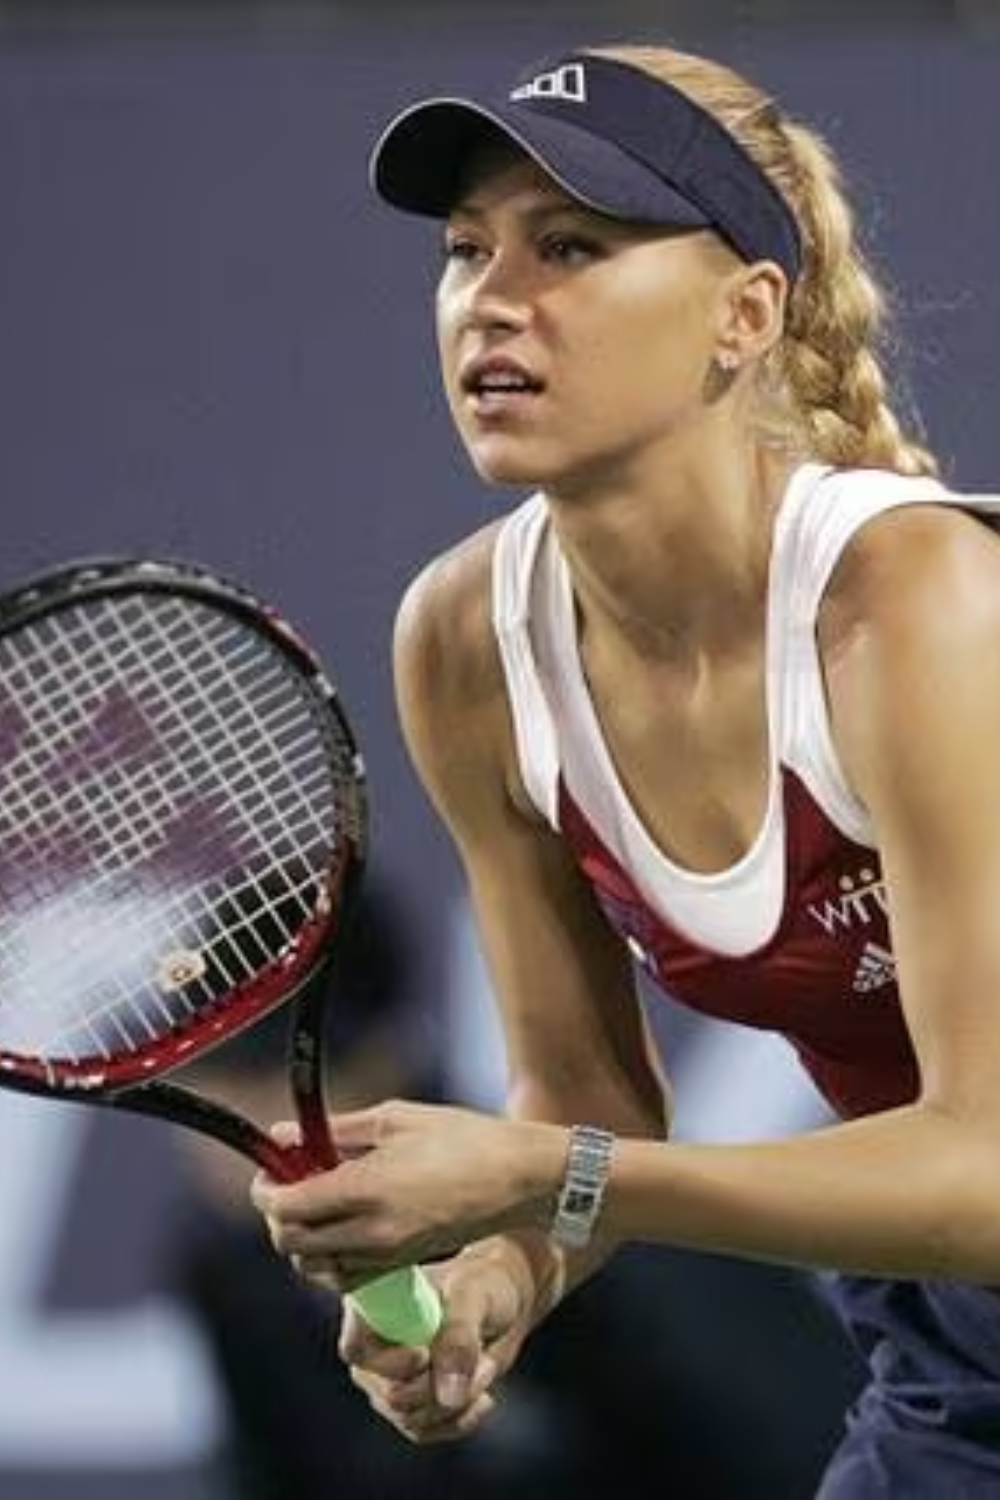 Former Tennis Player Anna Kournikova